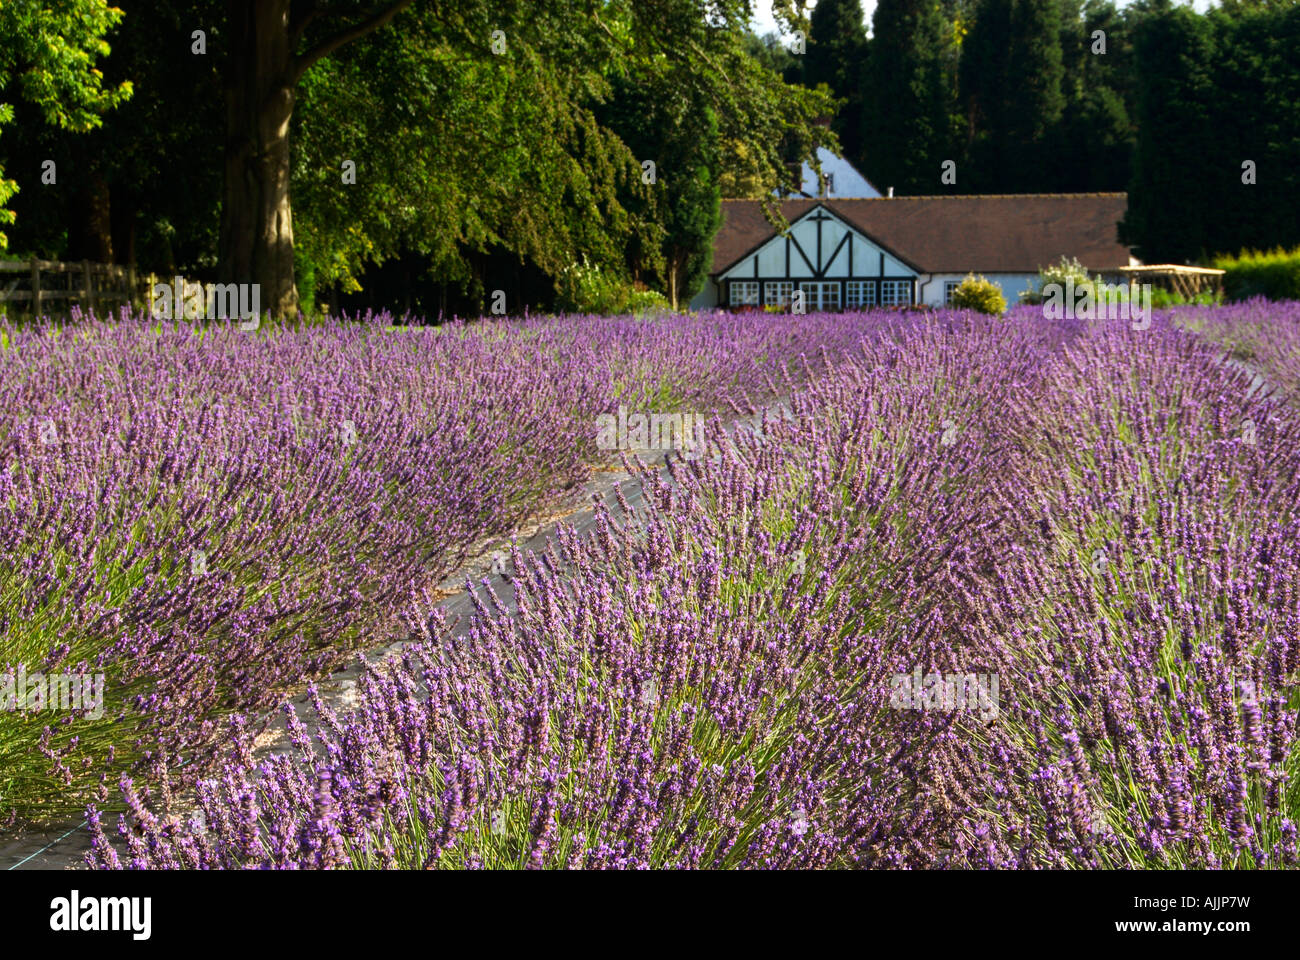 The Lavender Fields At Swettenham Cheshire UK Stock Photo